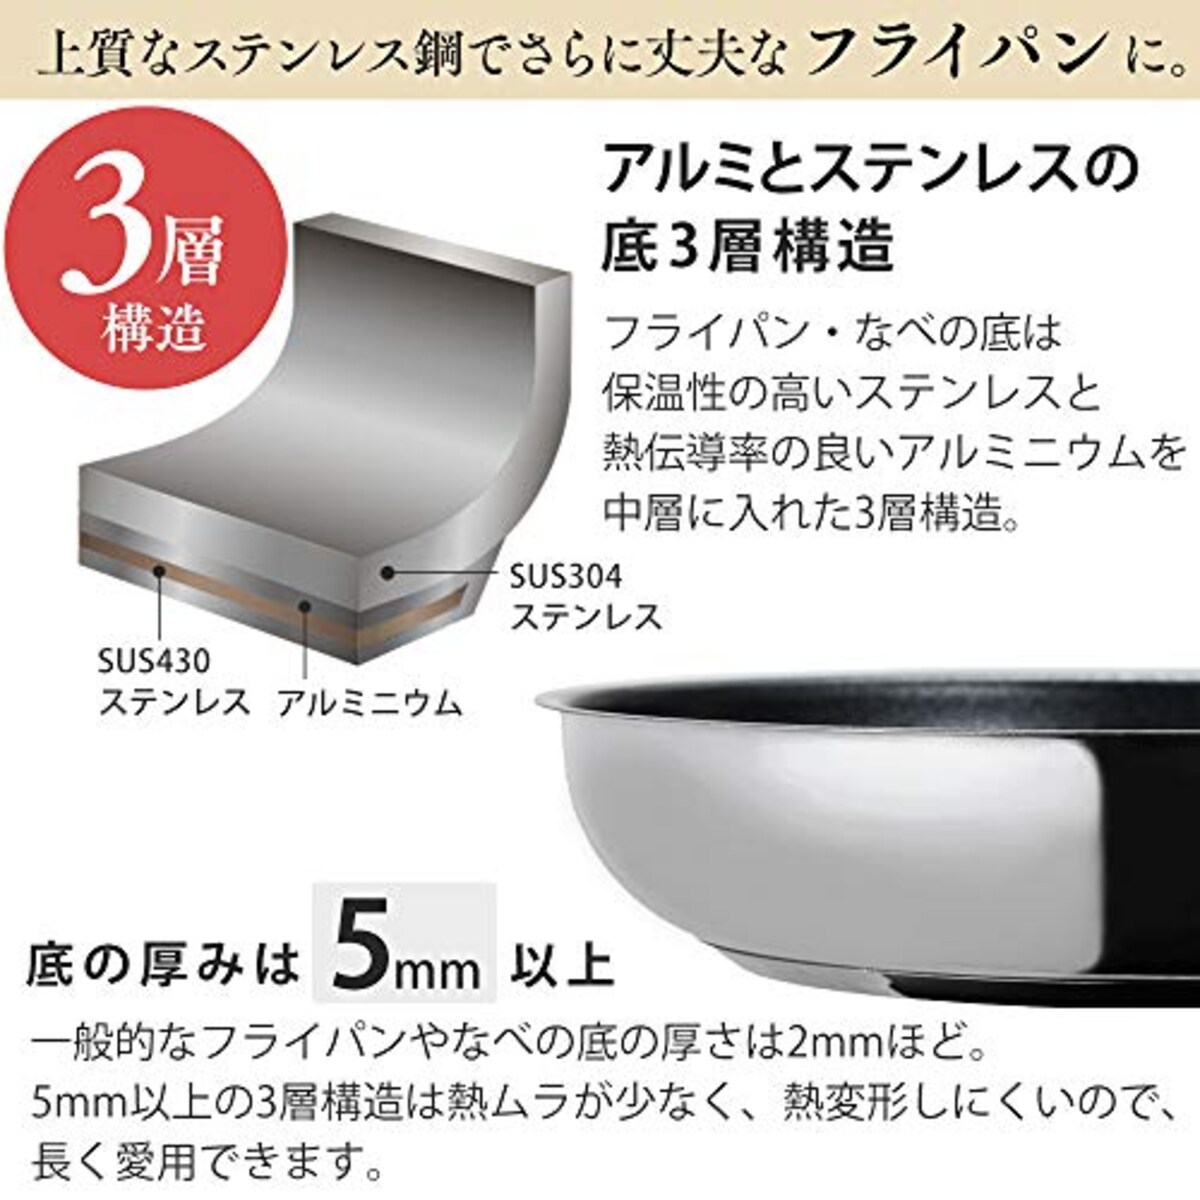  アイリスオーヤマ フライパン シルバー ステンレス 20cm IH対応 SP-F20画像3 